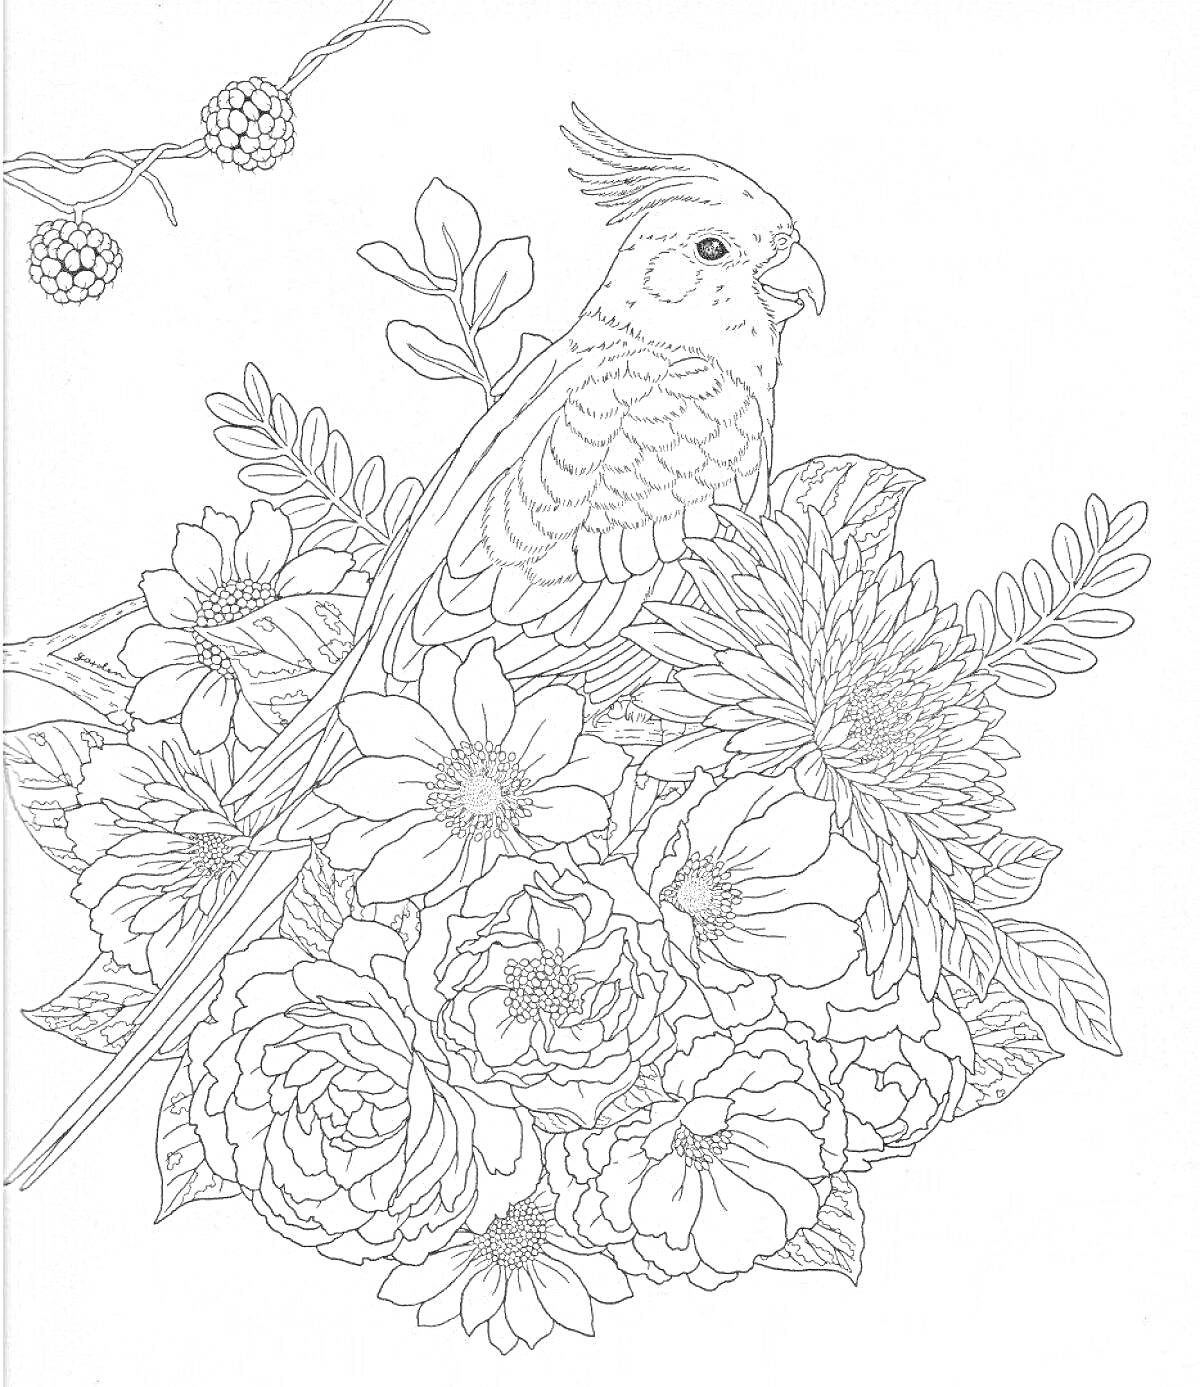 Раскраска Попугай на ветке, окружённый цветами и листьями